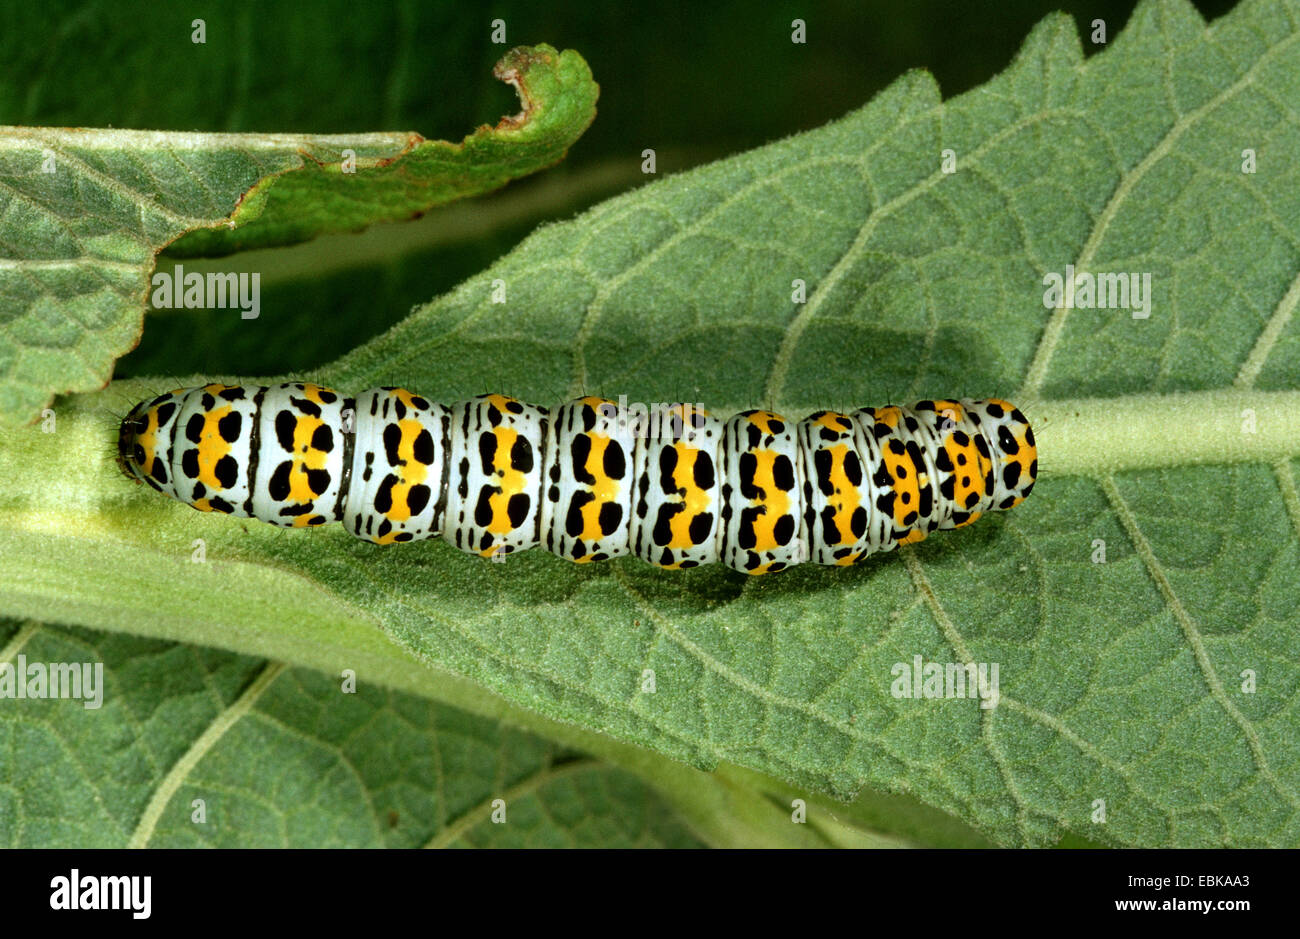 Mullein moth, Mullein caterpillar (Cucullia verbasci, Shargacucullia verbasci), caterpillar on leaf, Germany Stock Photo